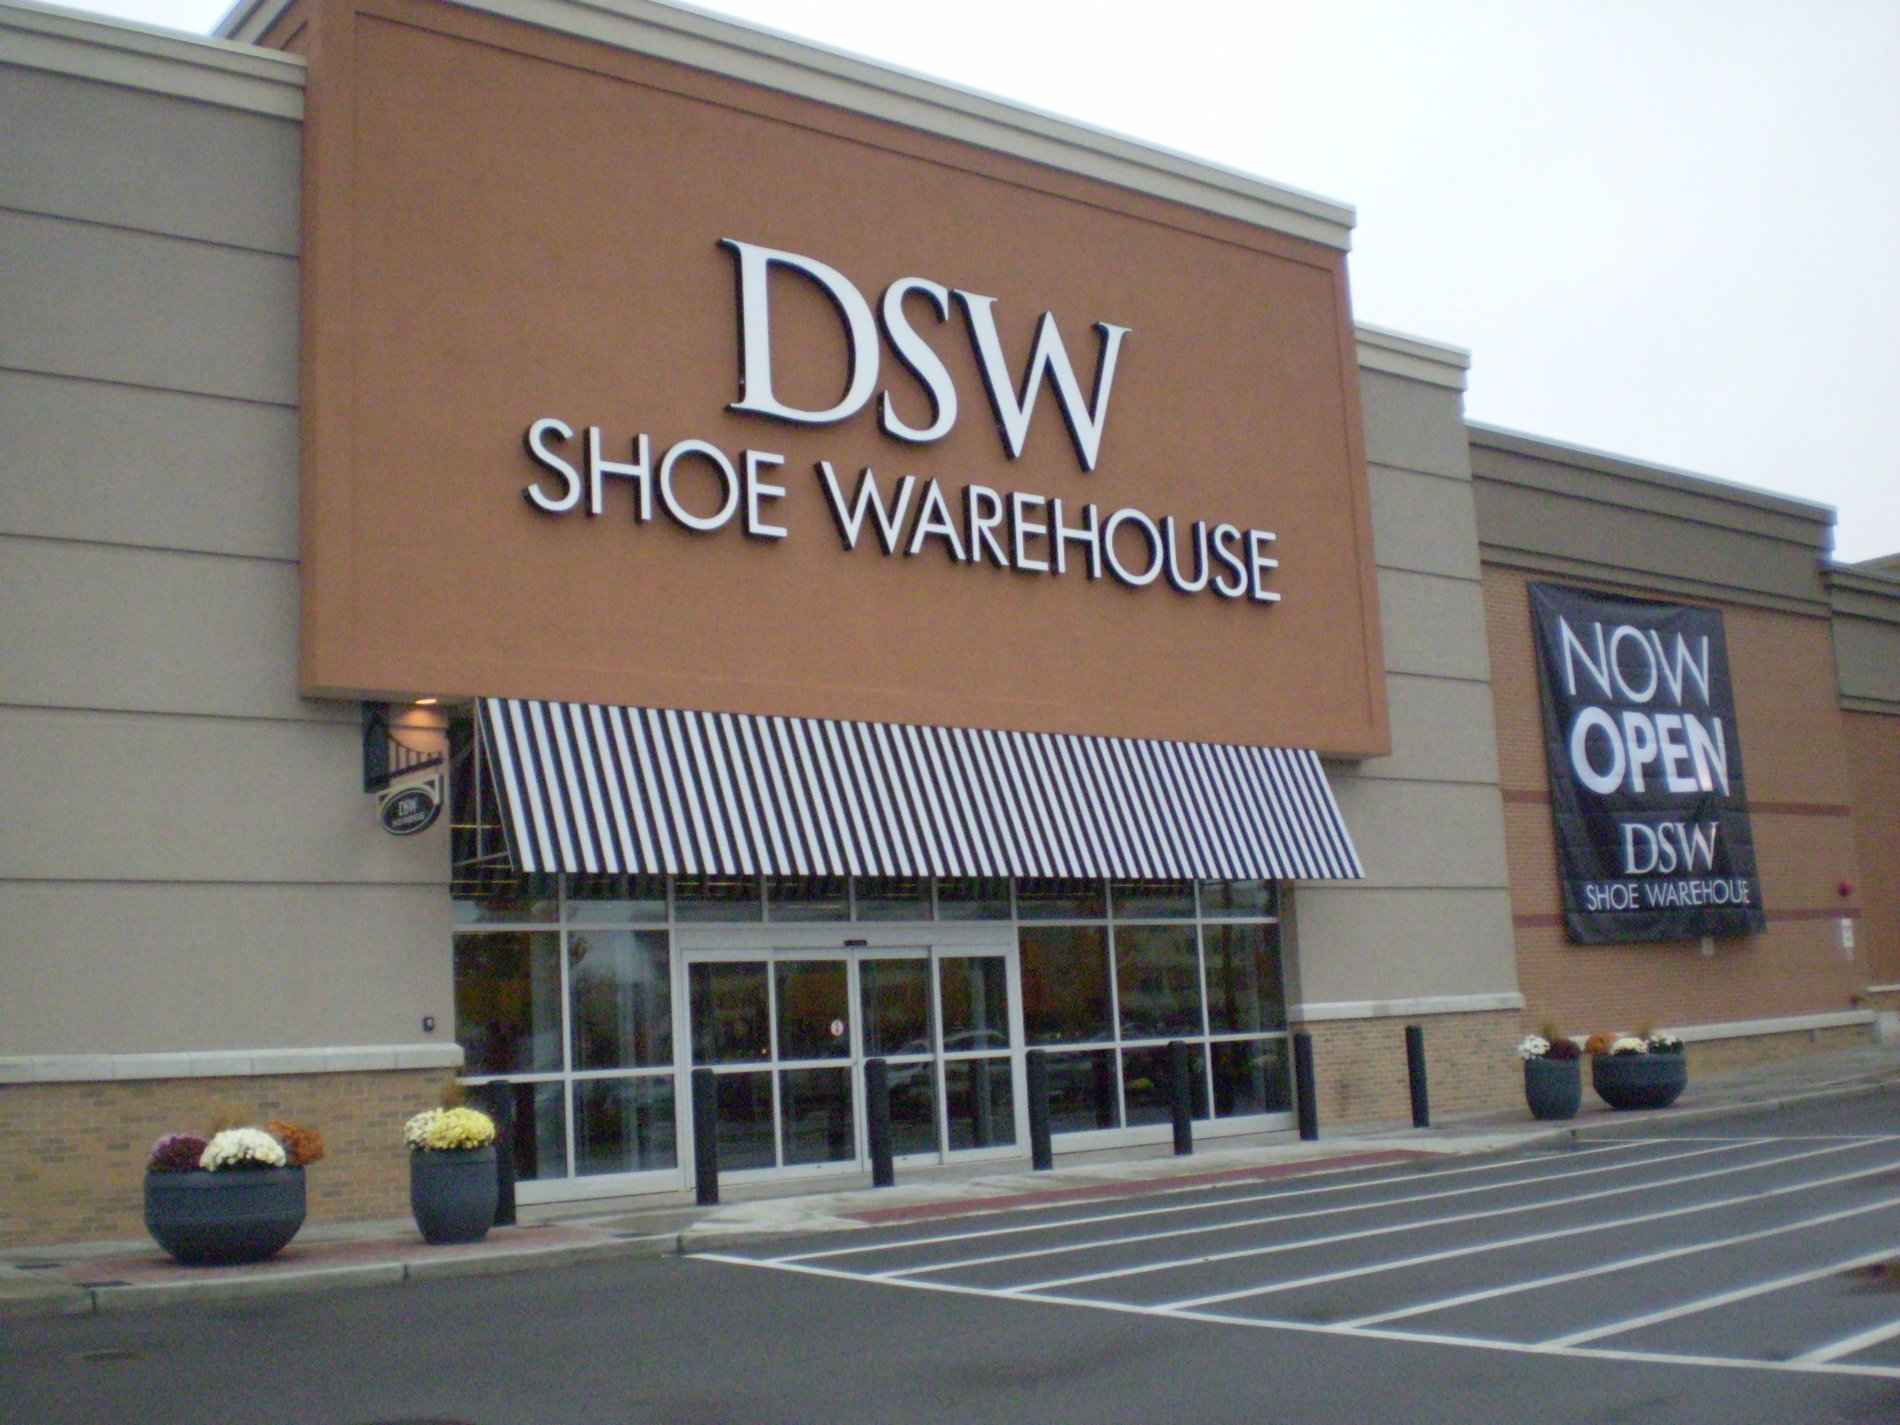 dsw shoe warehouse near me now